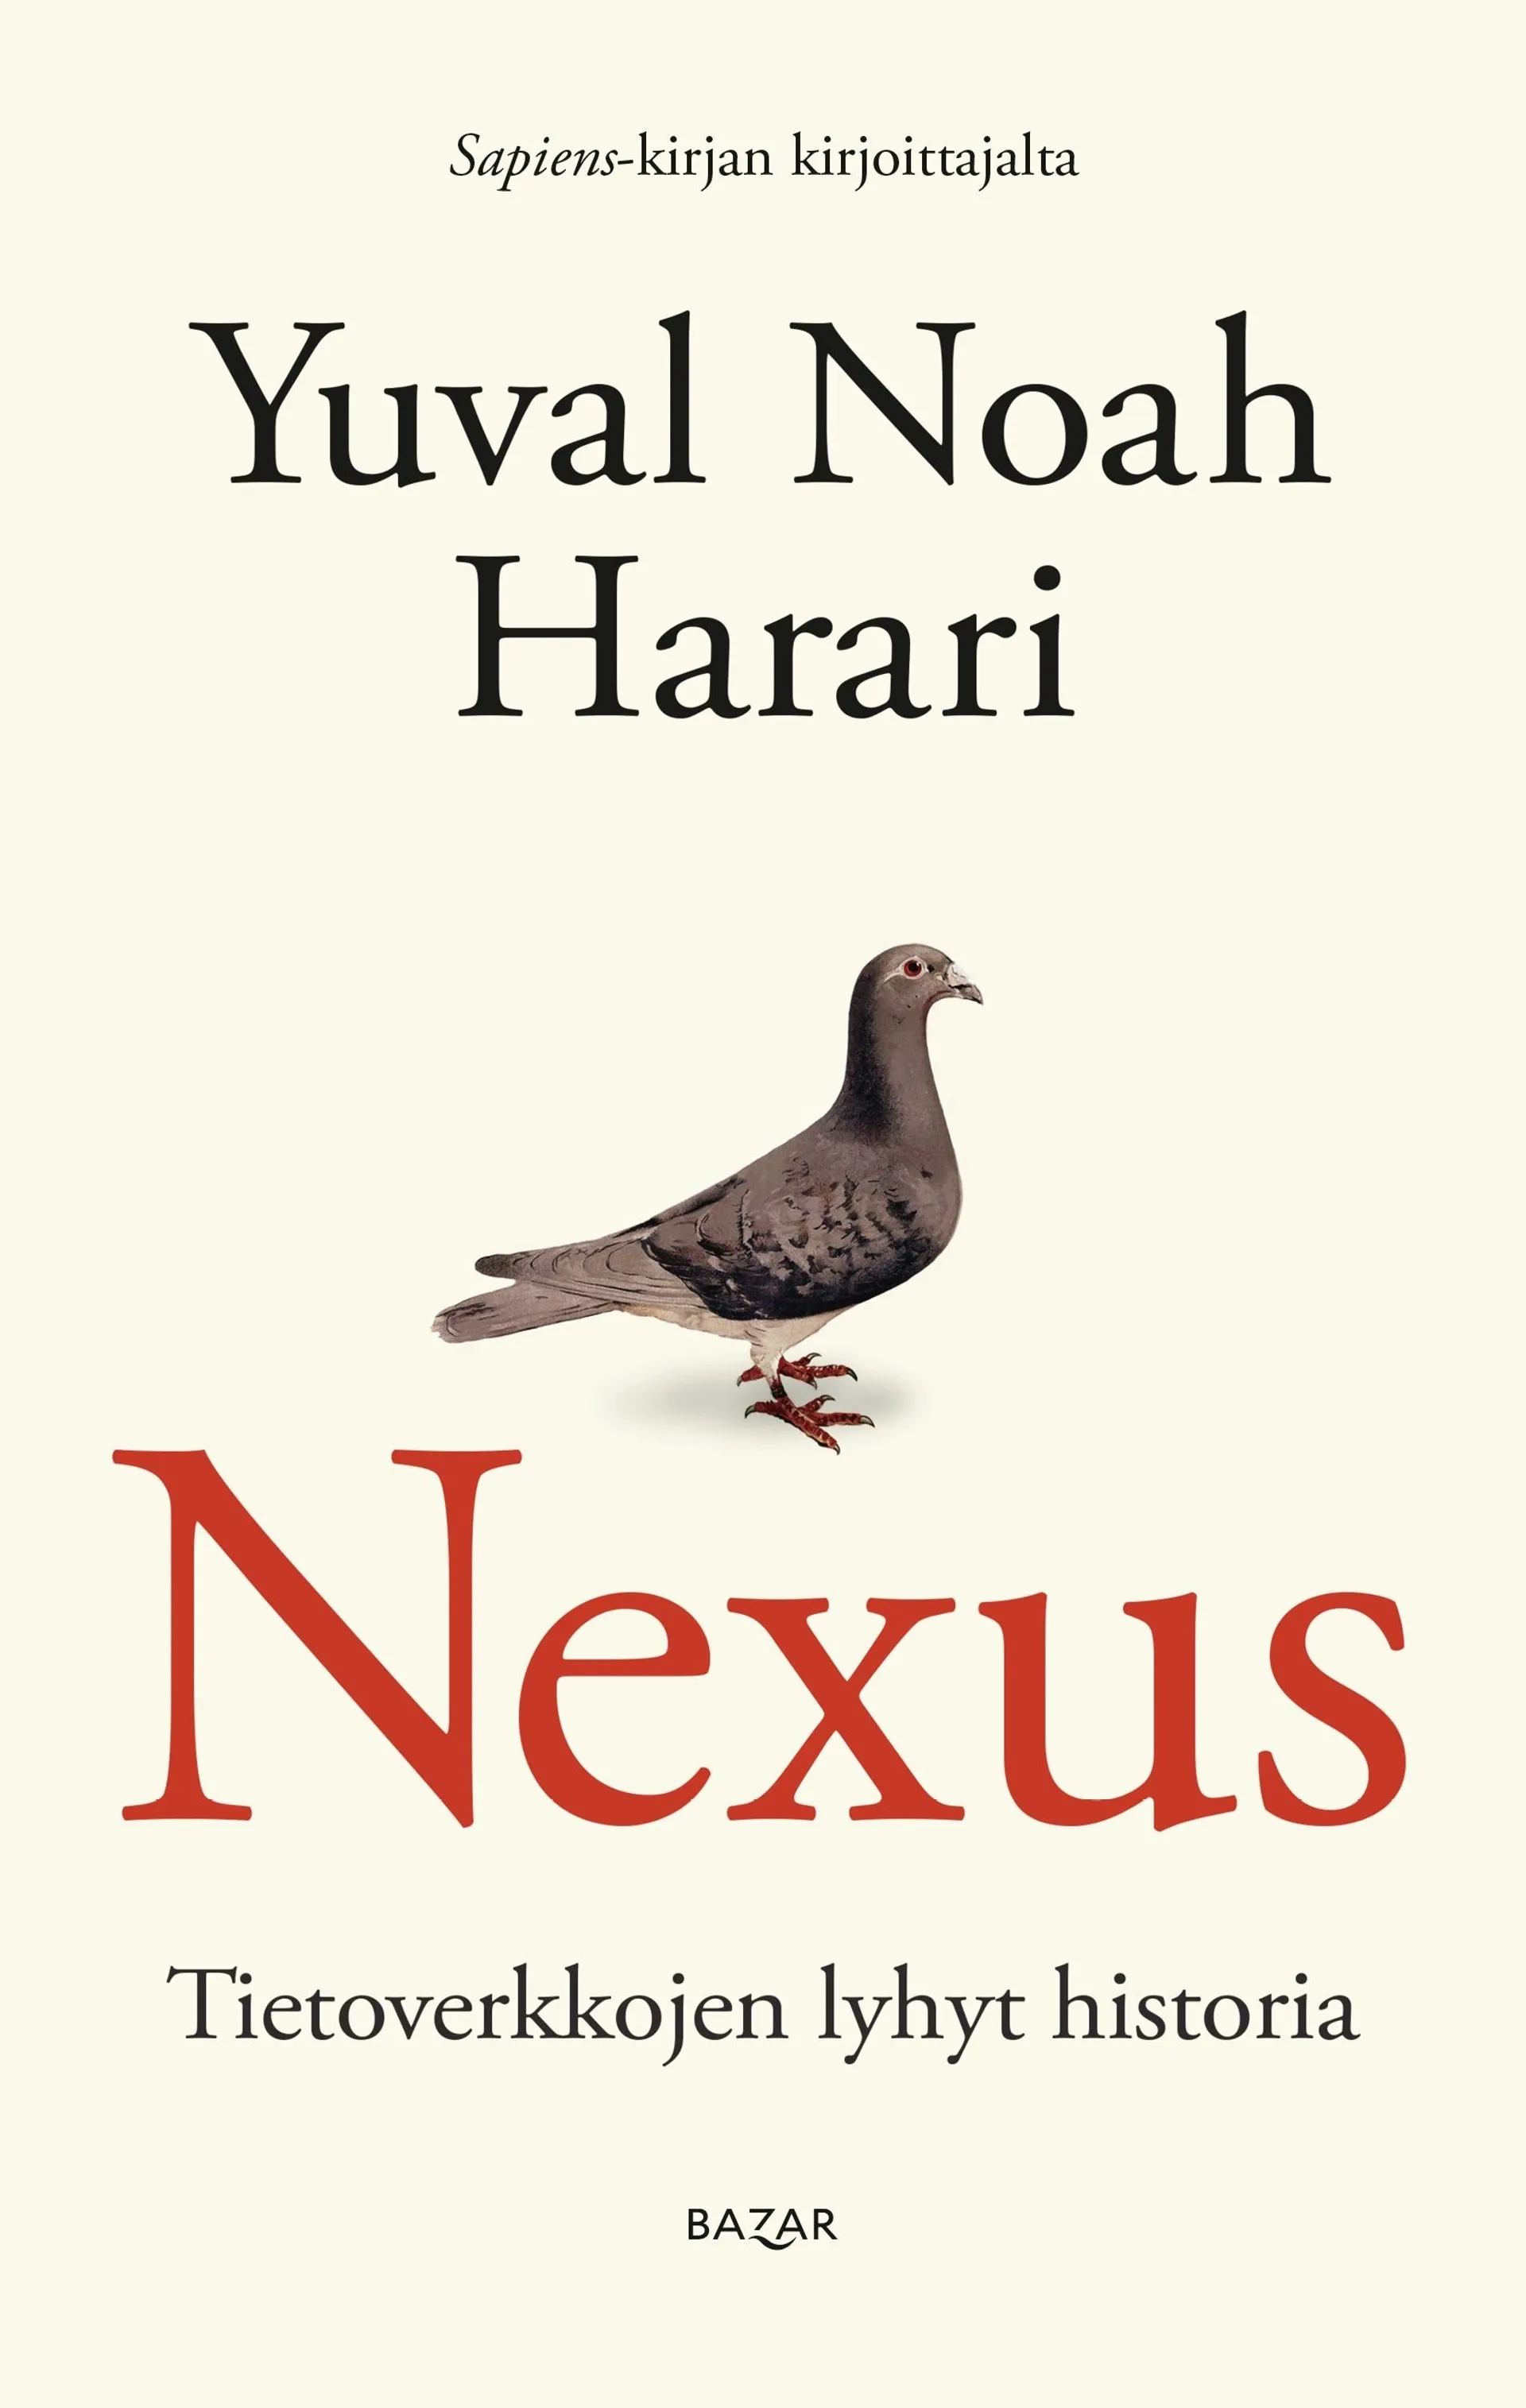 Harari, Nexus - Tietoverkkojen lyhyt historia